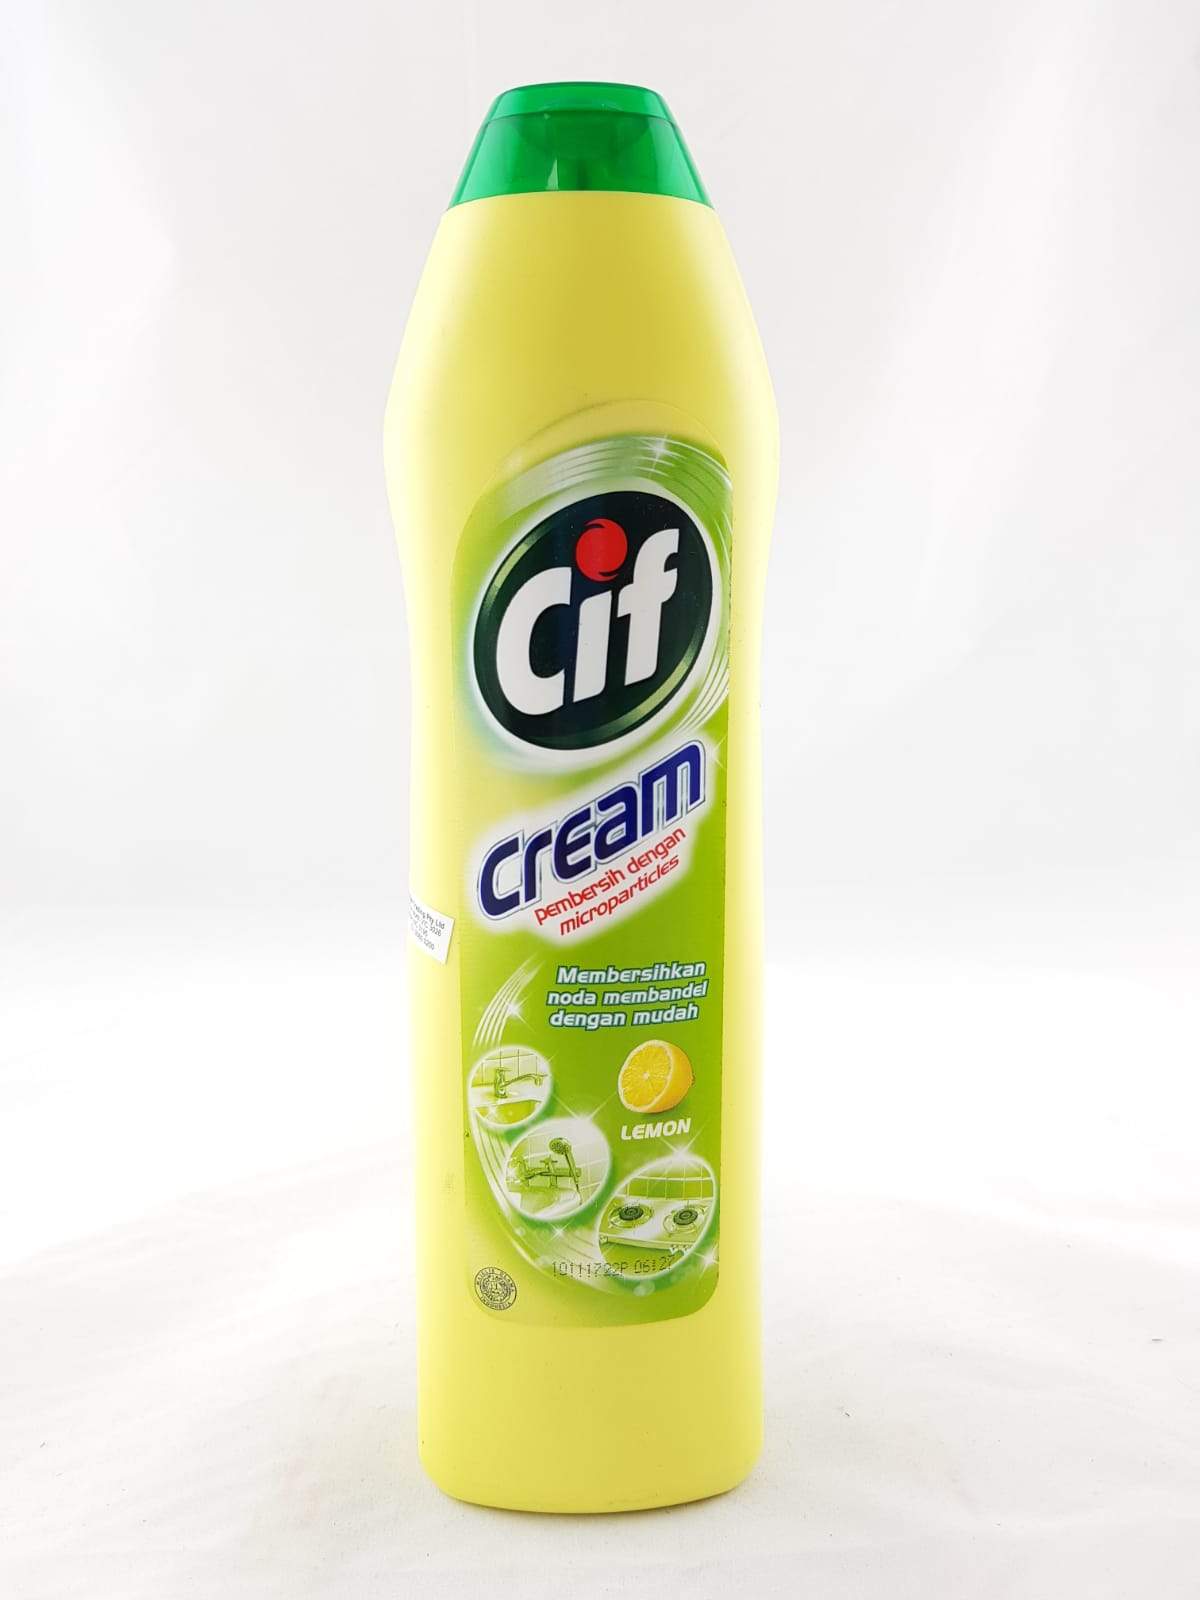 CIF Cream Cleaner LEMON 500ml PACK OF 3